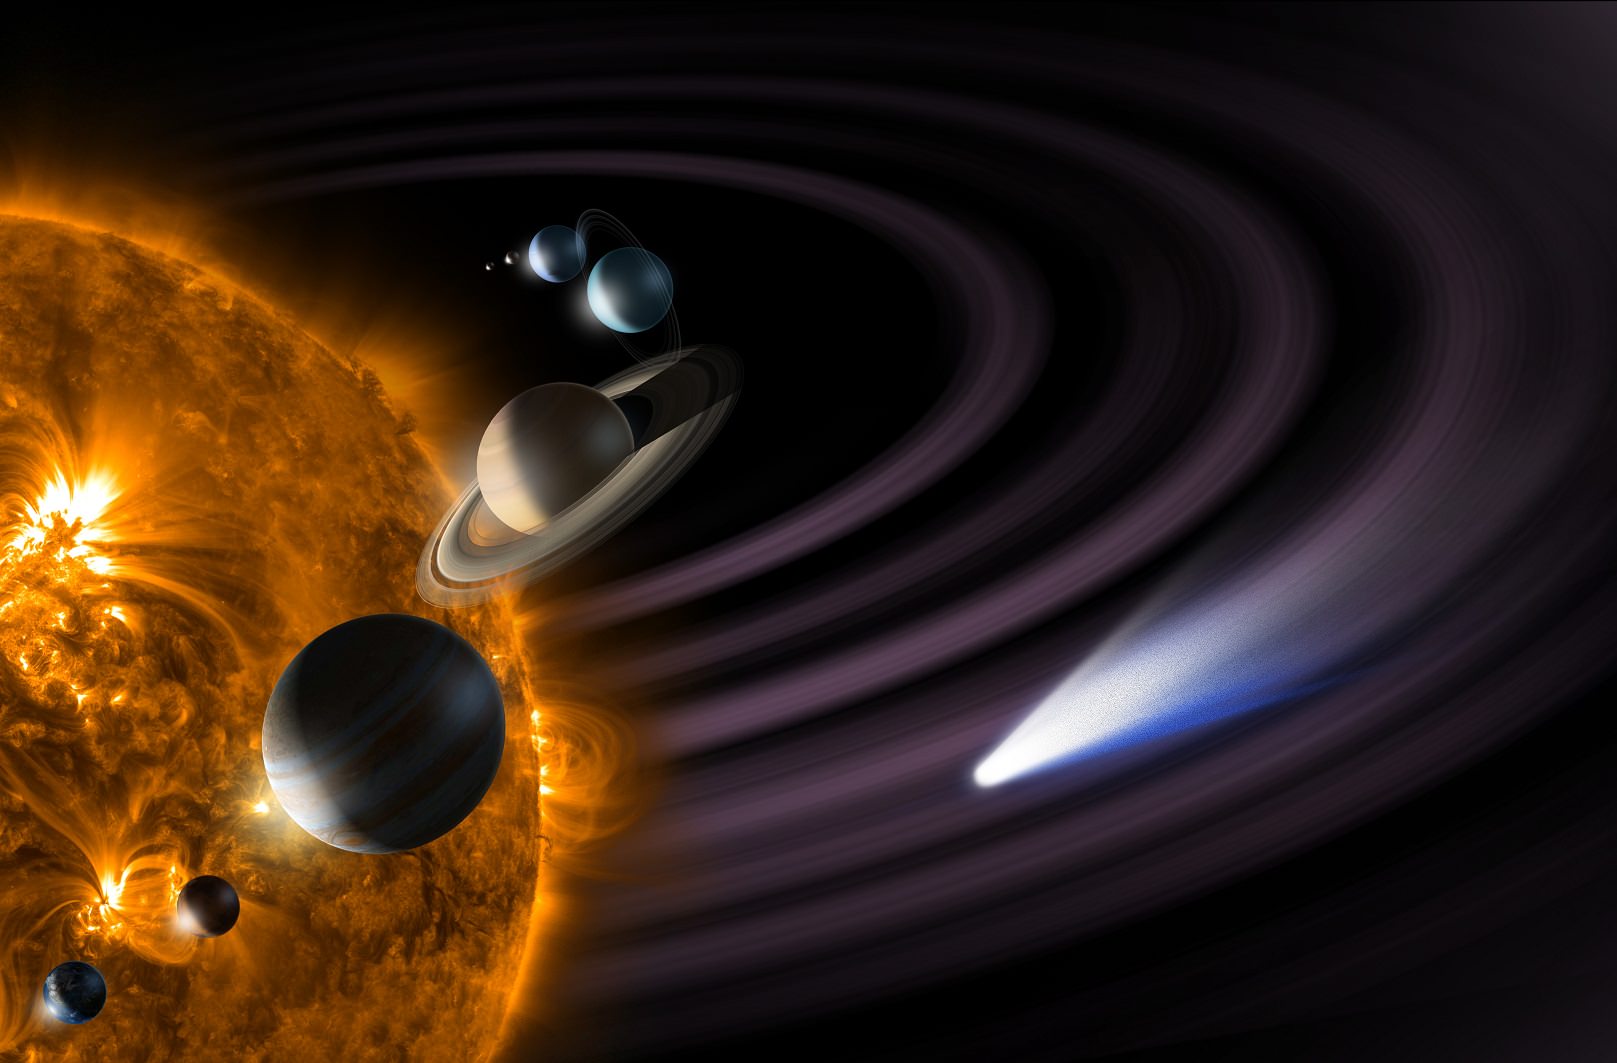 Νέα στοιχεία ανακοινώνει η NASA για εξωπλανήτες των οποίων οι συνθήκες μοιάζουν με τη Γη!